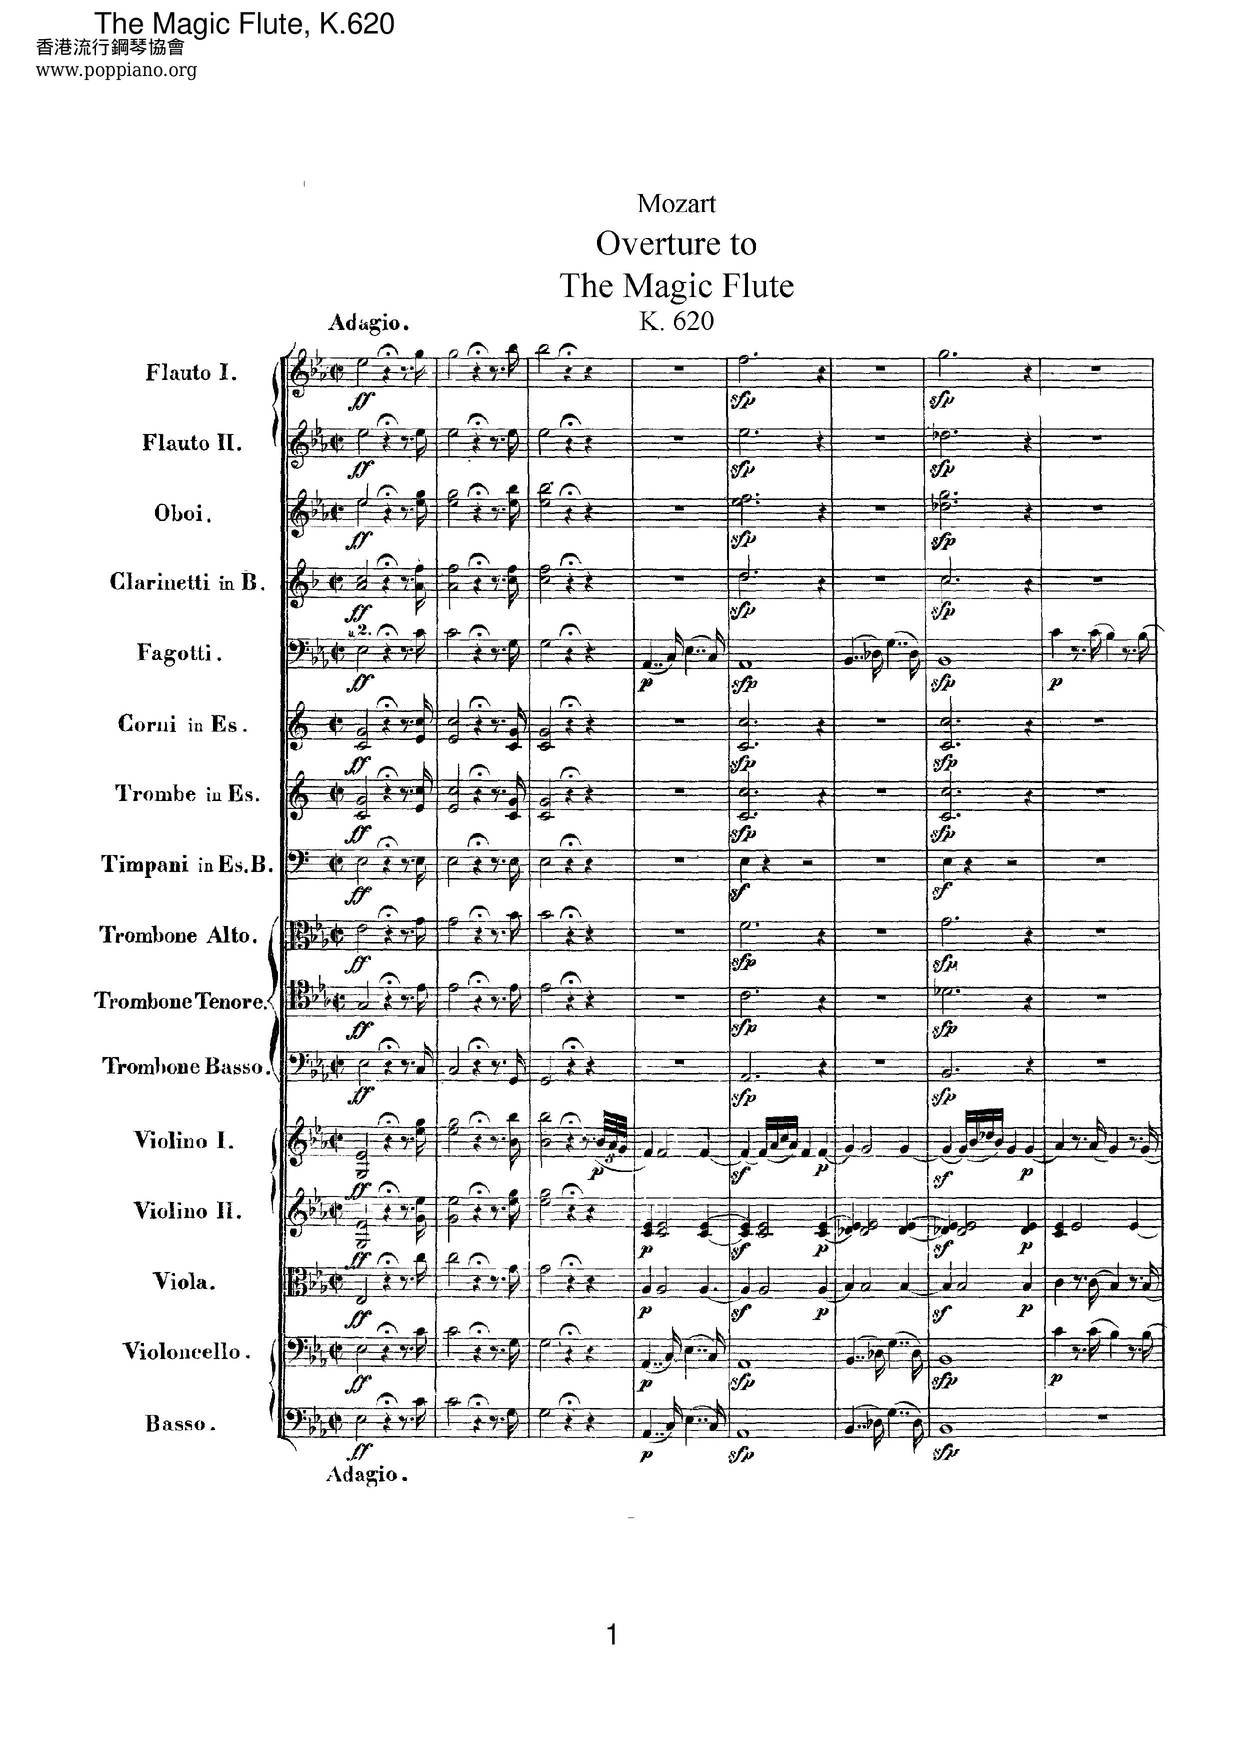 The Magic Flute, K. 620ピアノ譜